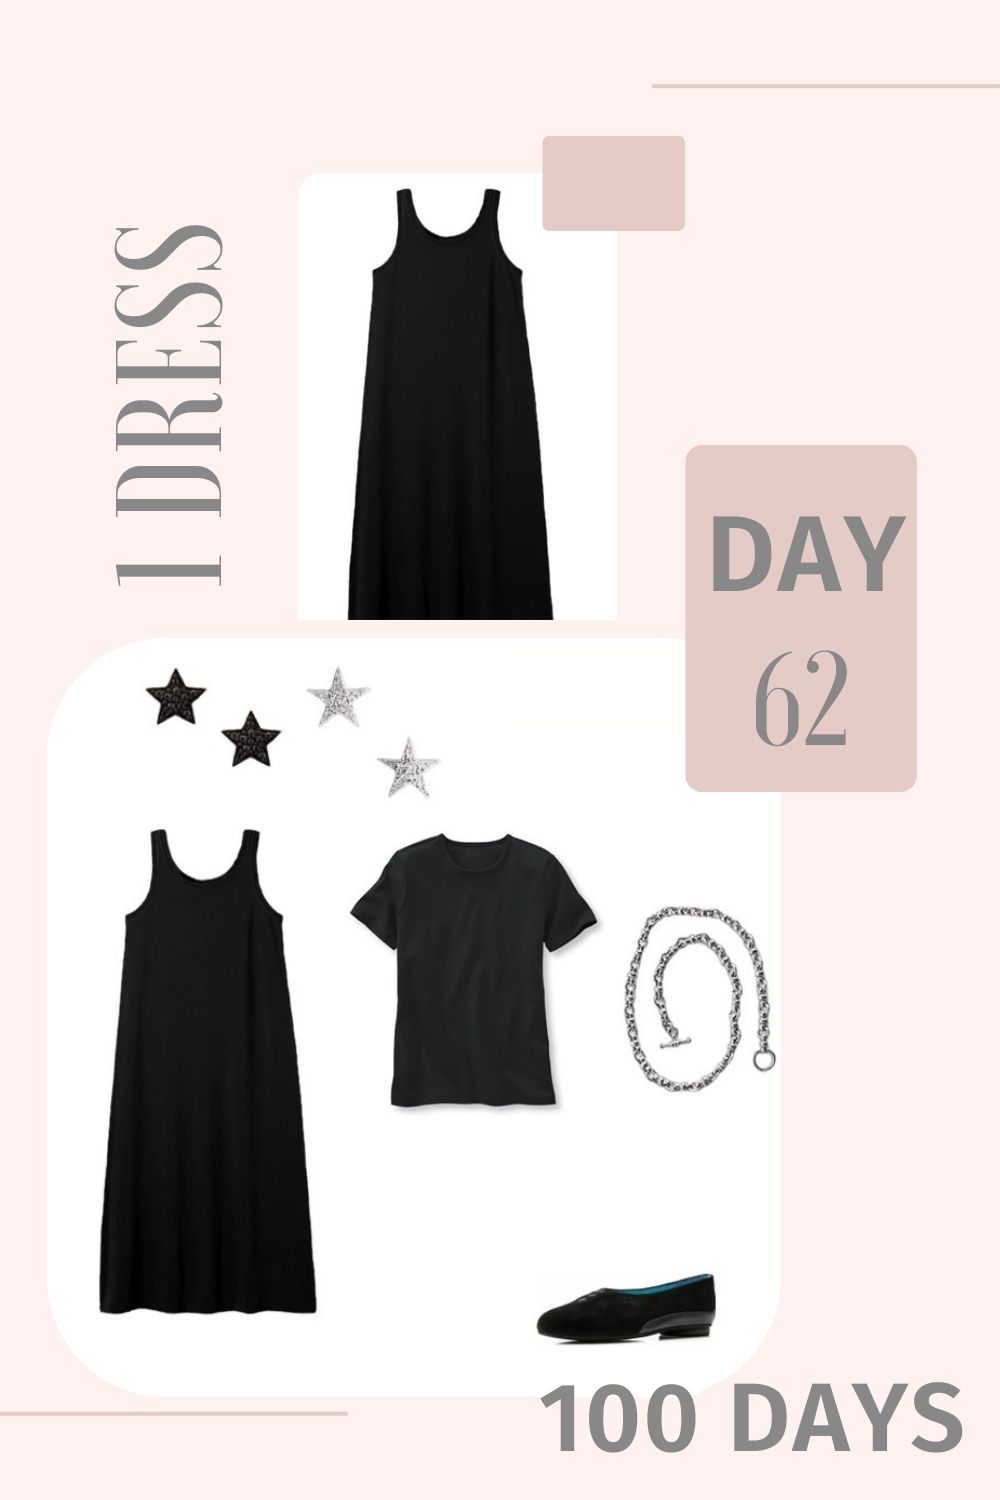 1 Dress 100 Days - Day 62